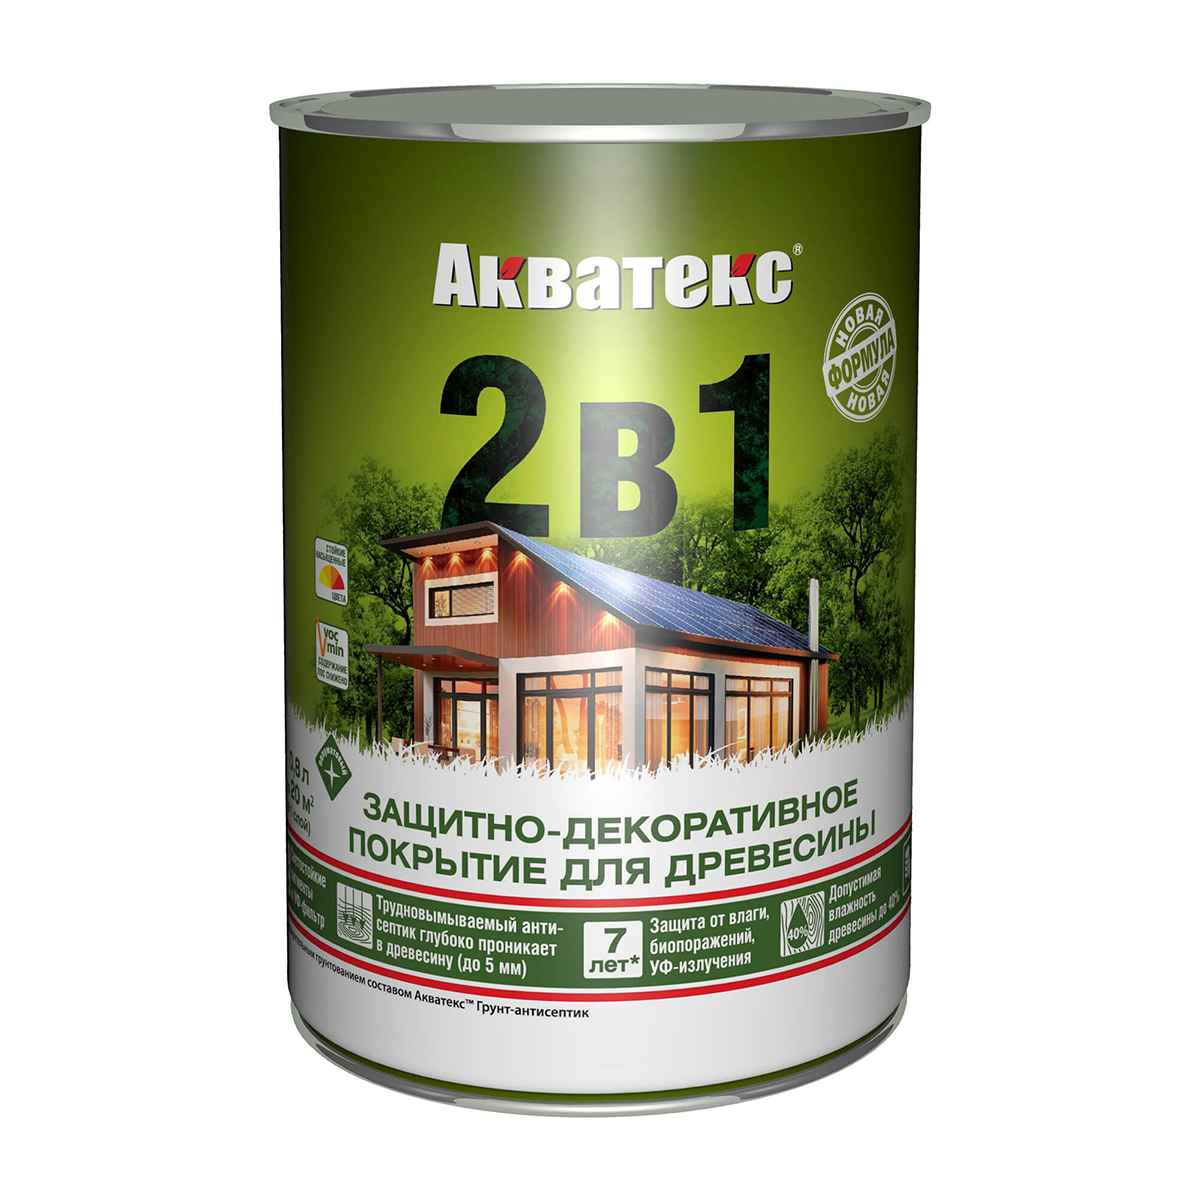 Защитно-декоративное покрытие для дерева Акватекс 2 в 1, полуматовое, 0,8 л, бесцветное защитно декоративное покрытие для древесины eurotex